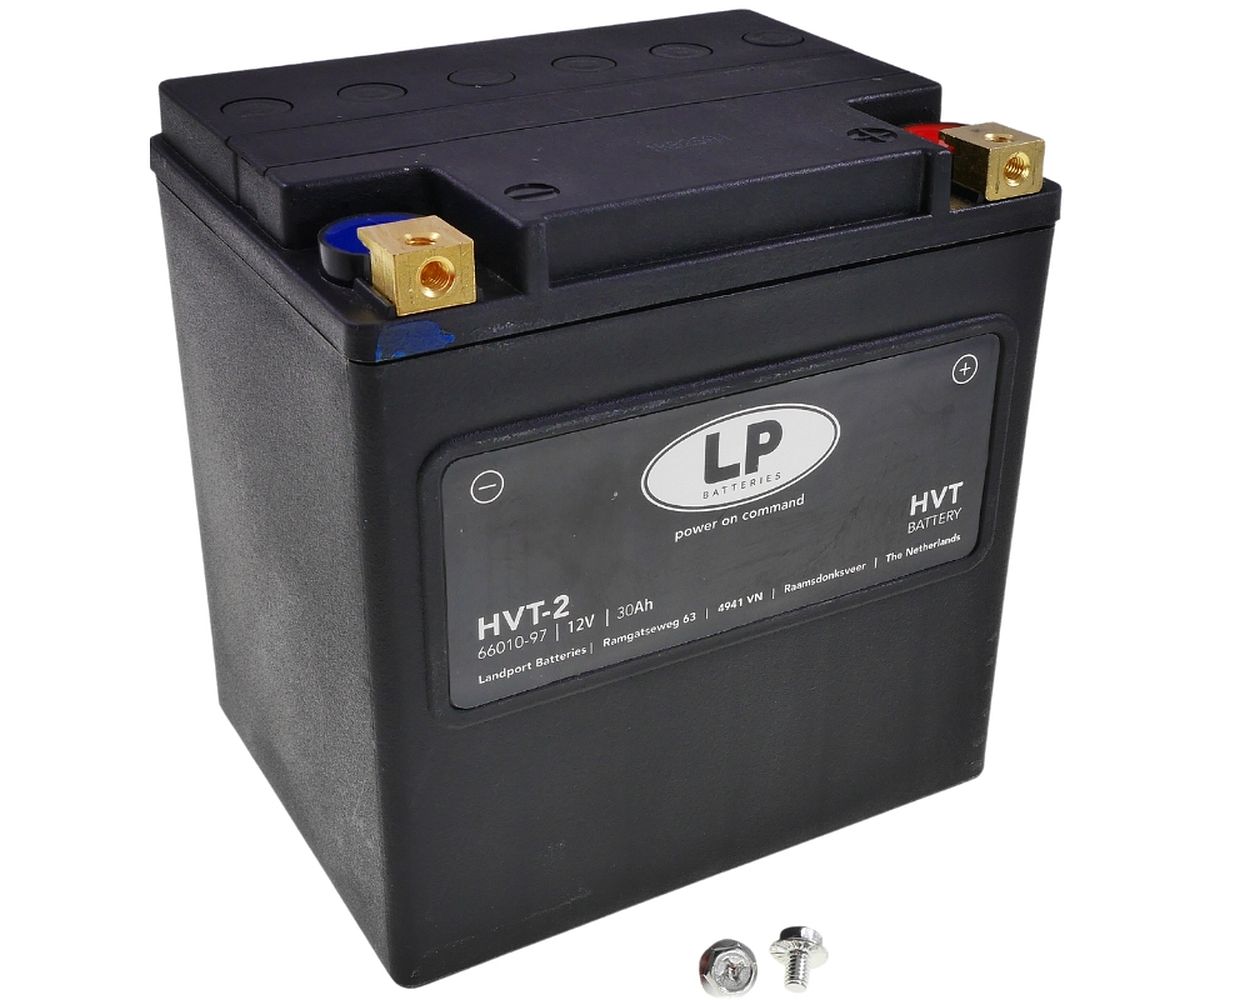 MB HVT-2 Batterie LANDPORT HVT-2 12V 30Ah AGM 169x131x174mm M